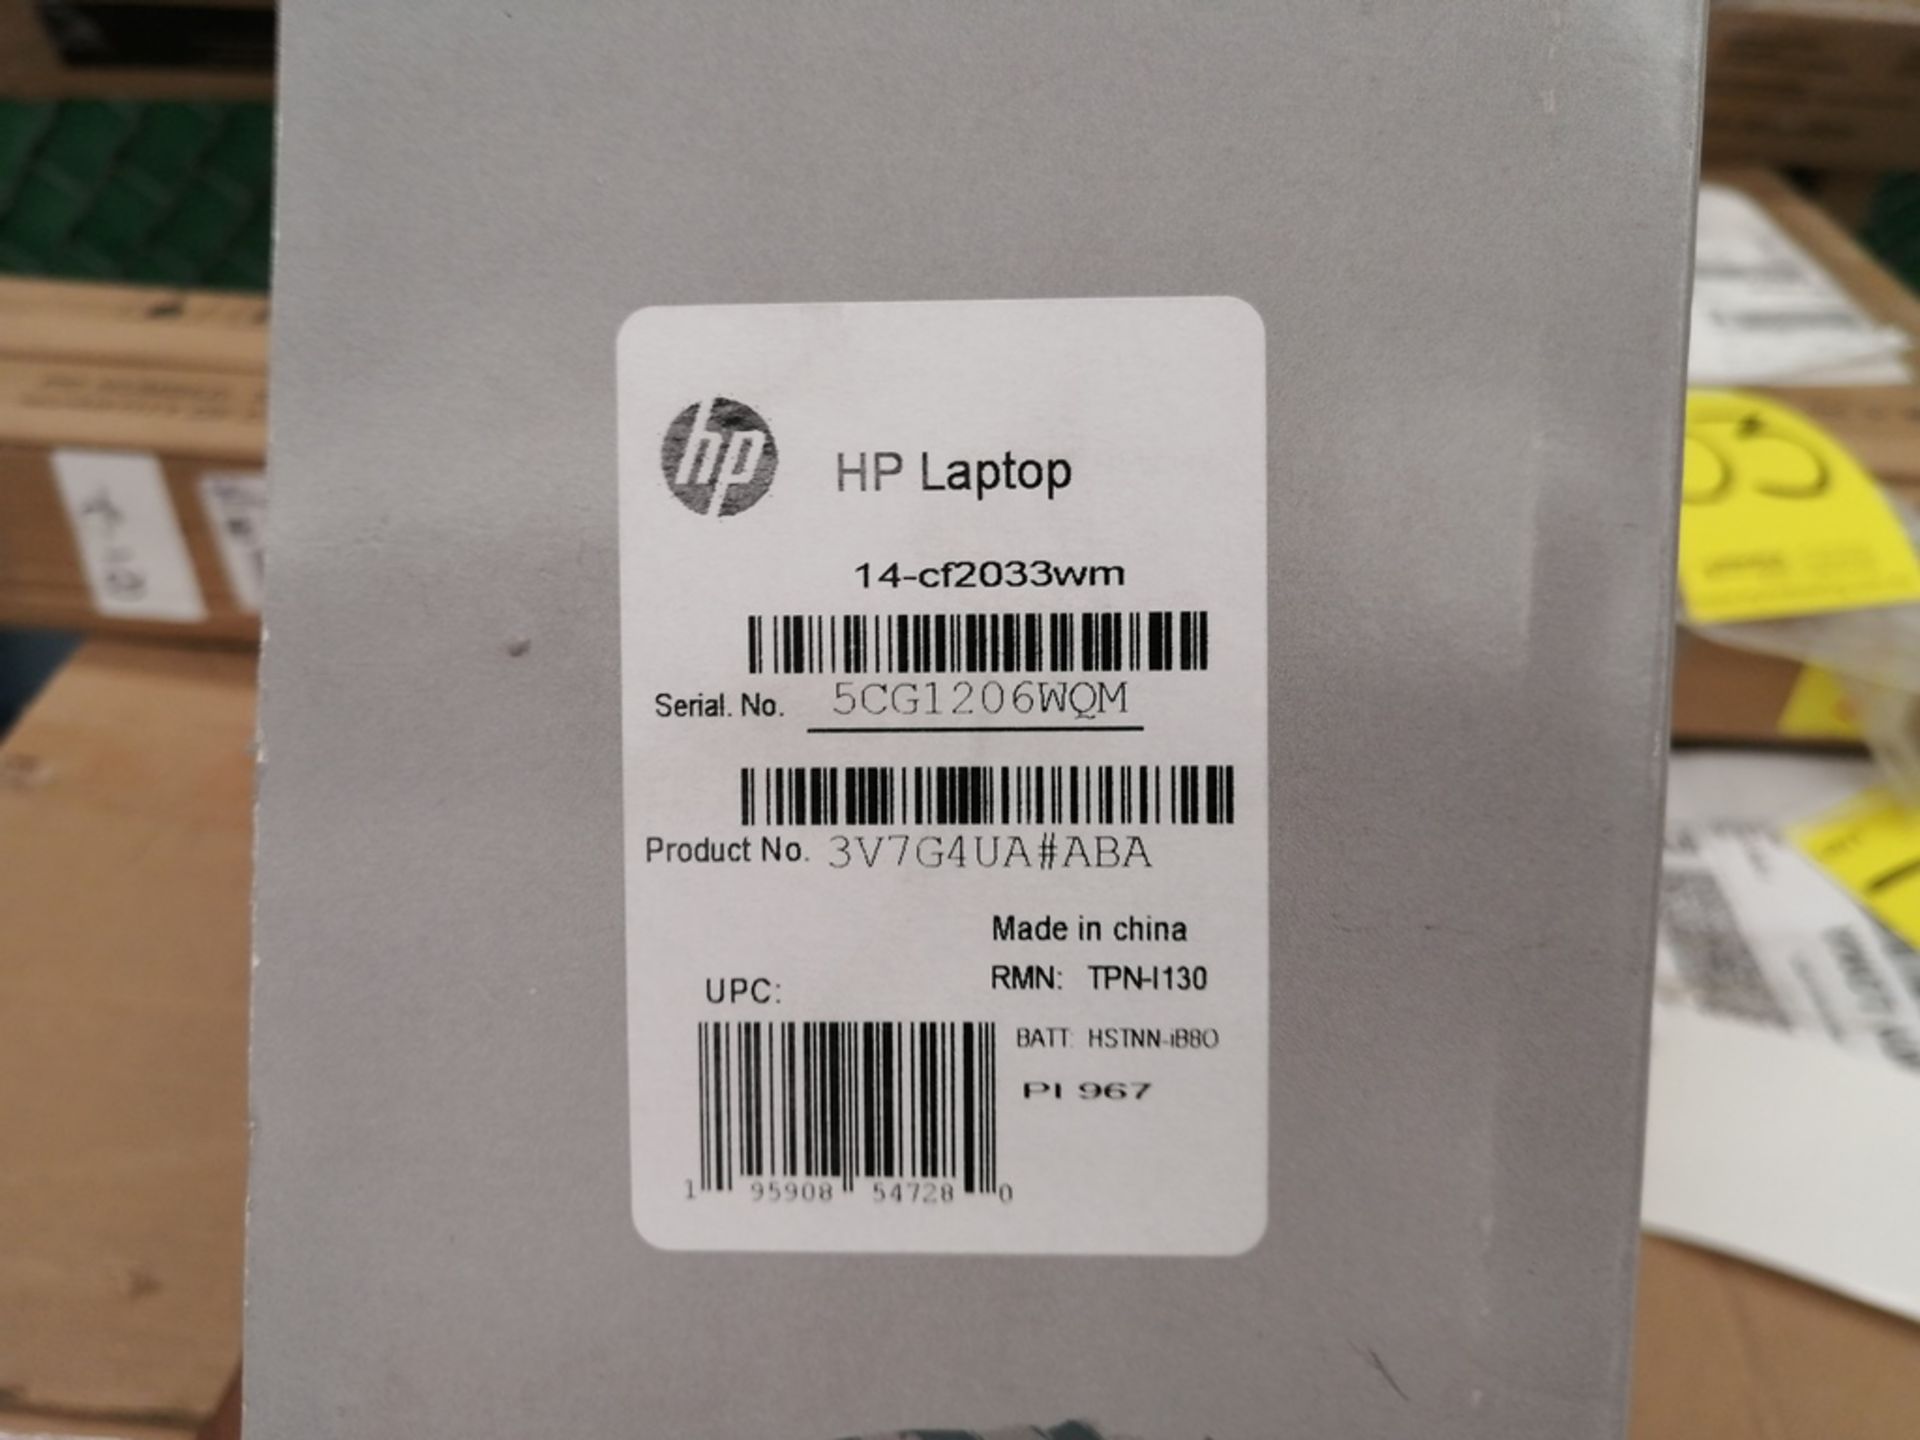 Lote de artículos contiene: 1 Computadora tipo Laptop marca HP, modelo 14CF2033, serie 5CG1206WQM, - Image 13 of 26